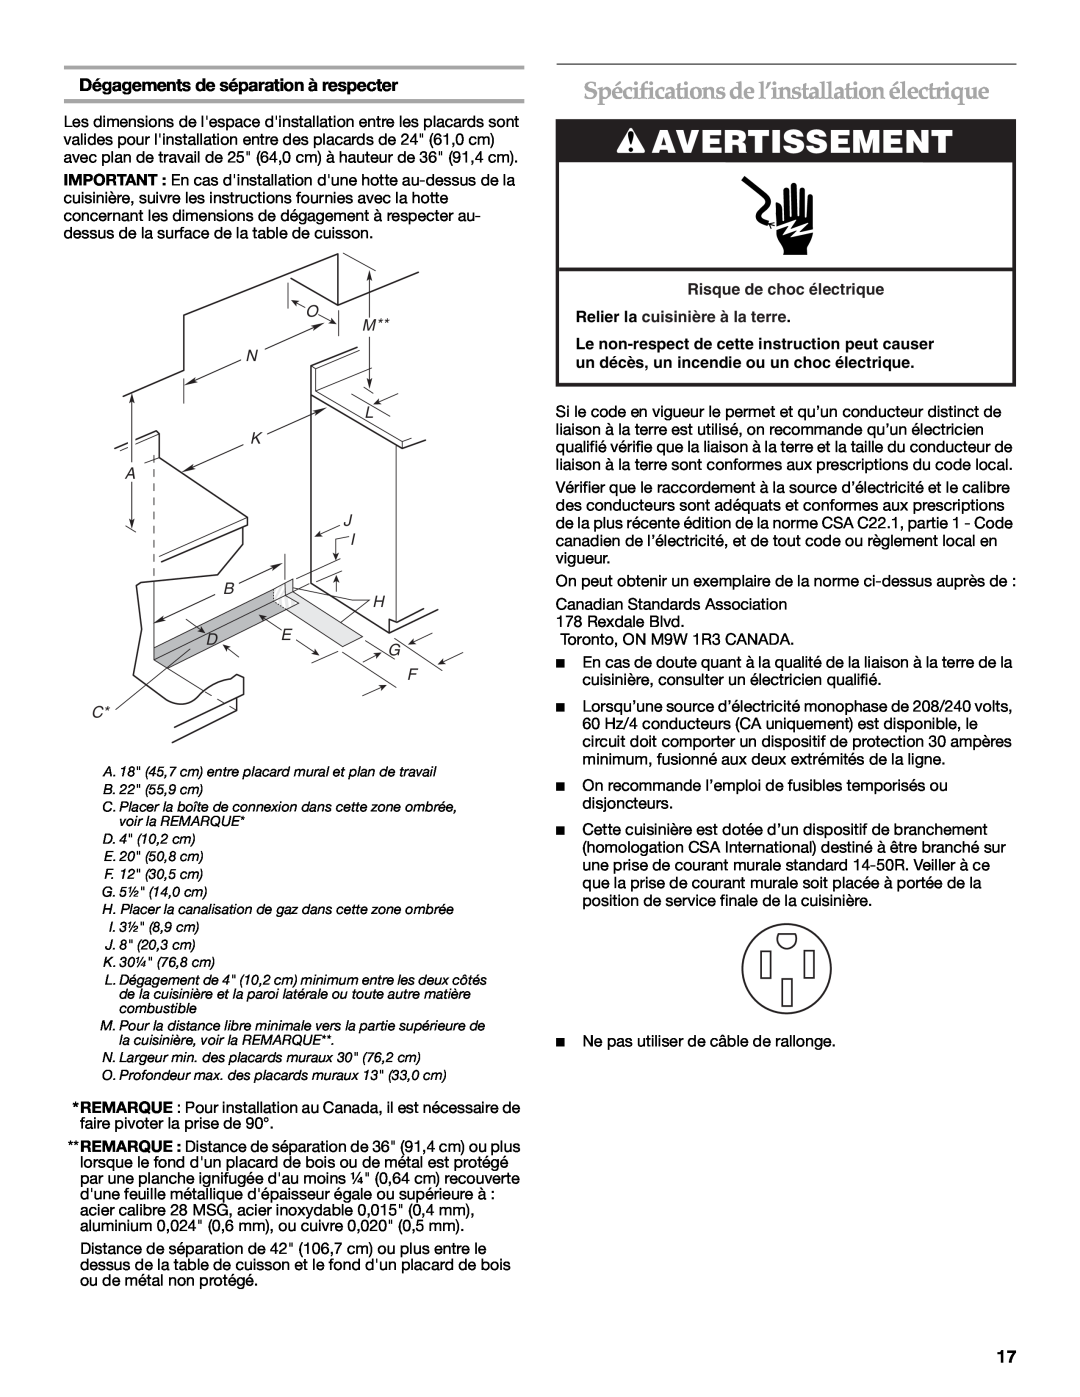 KitchenAid 9759536B Spécifications de l’installation électrique, Avertissement, Dégagements de séparation à respecter 